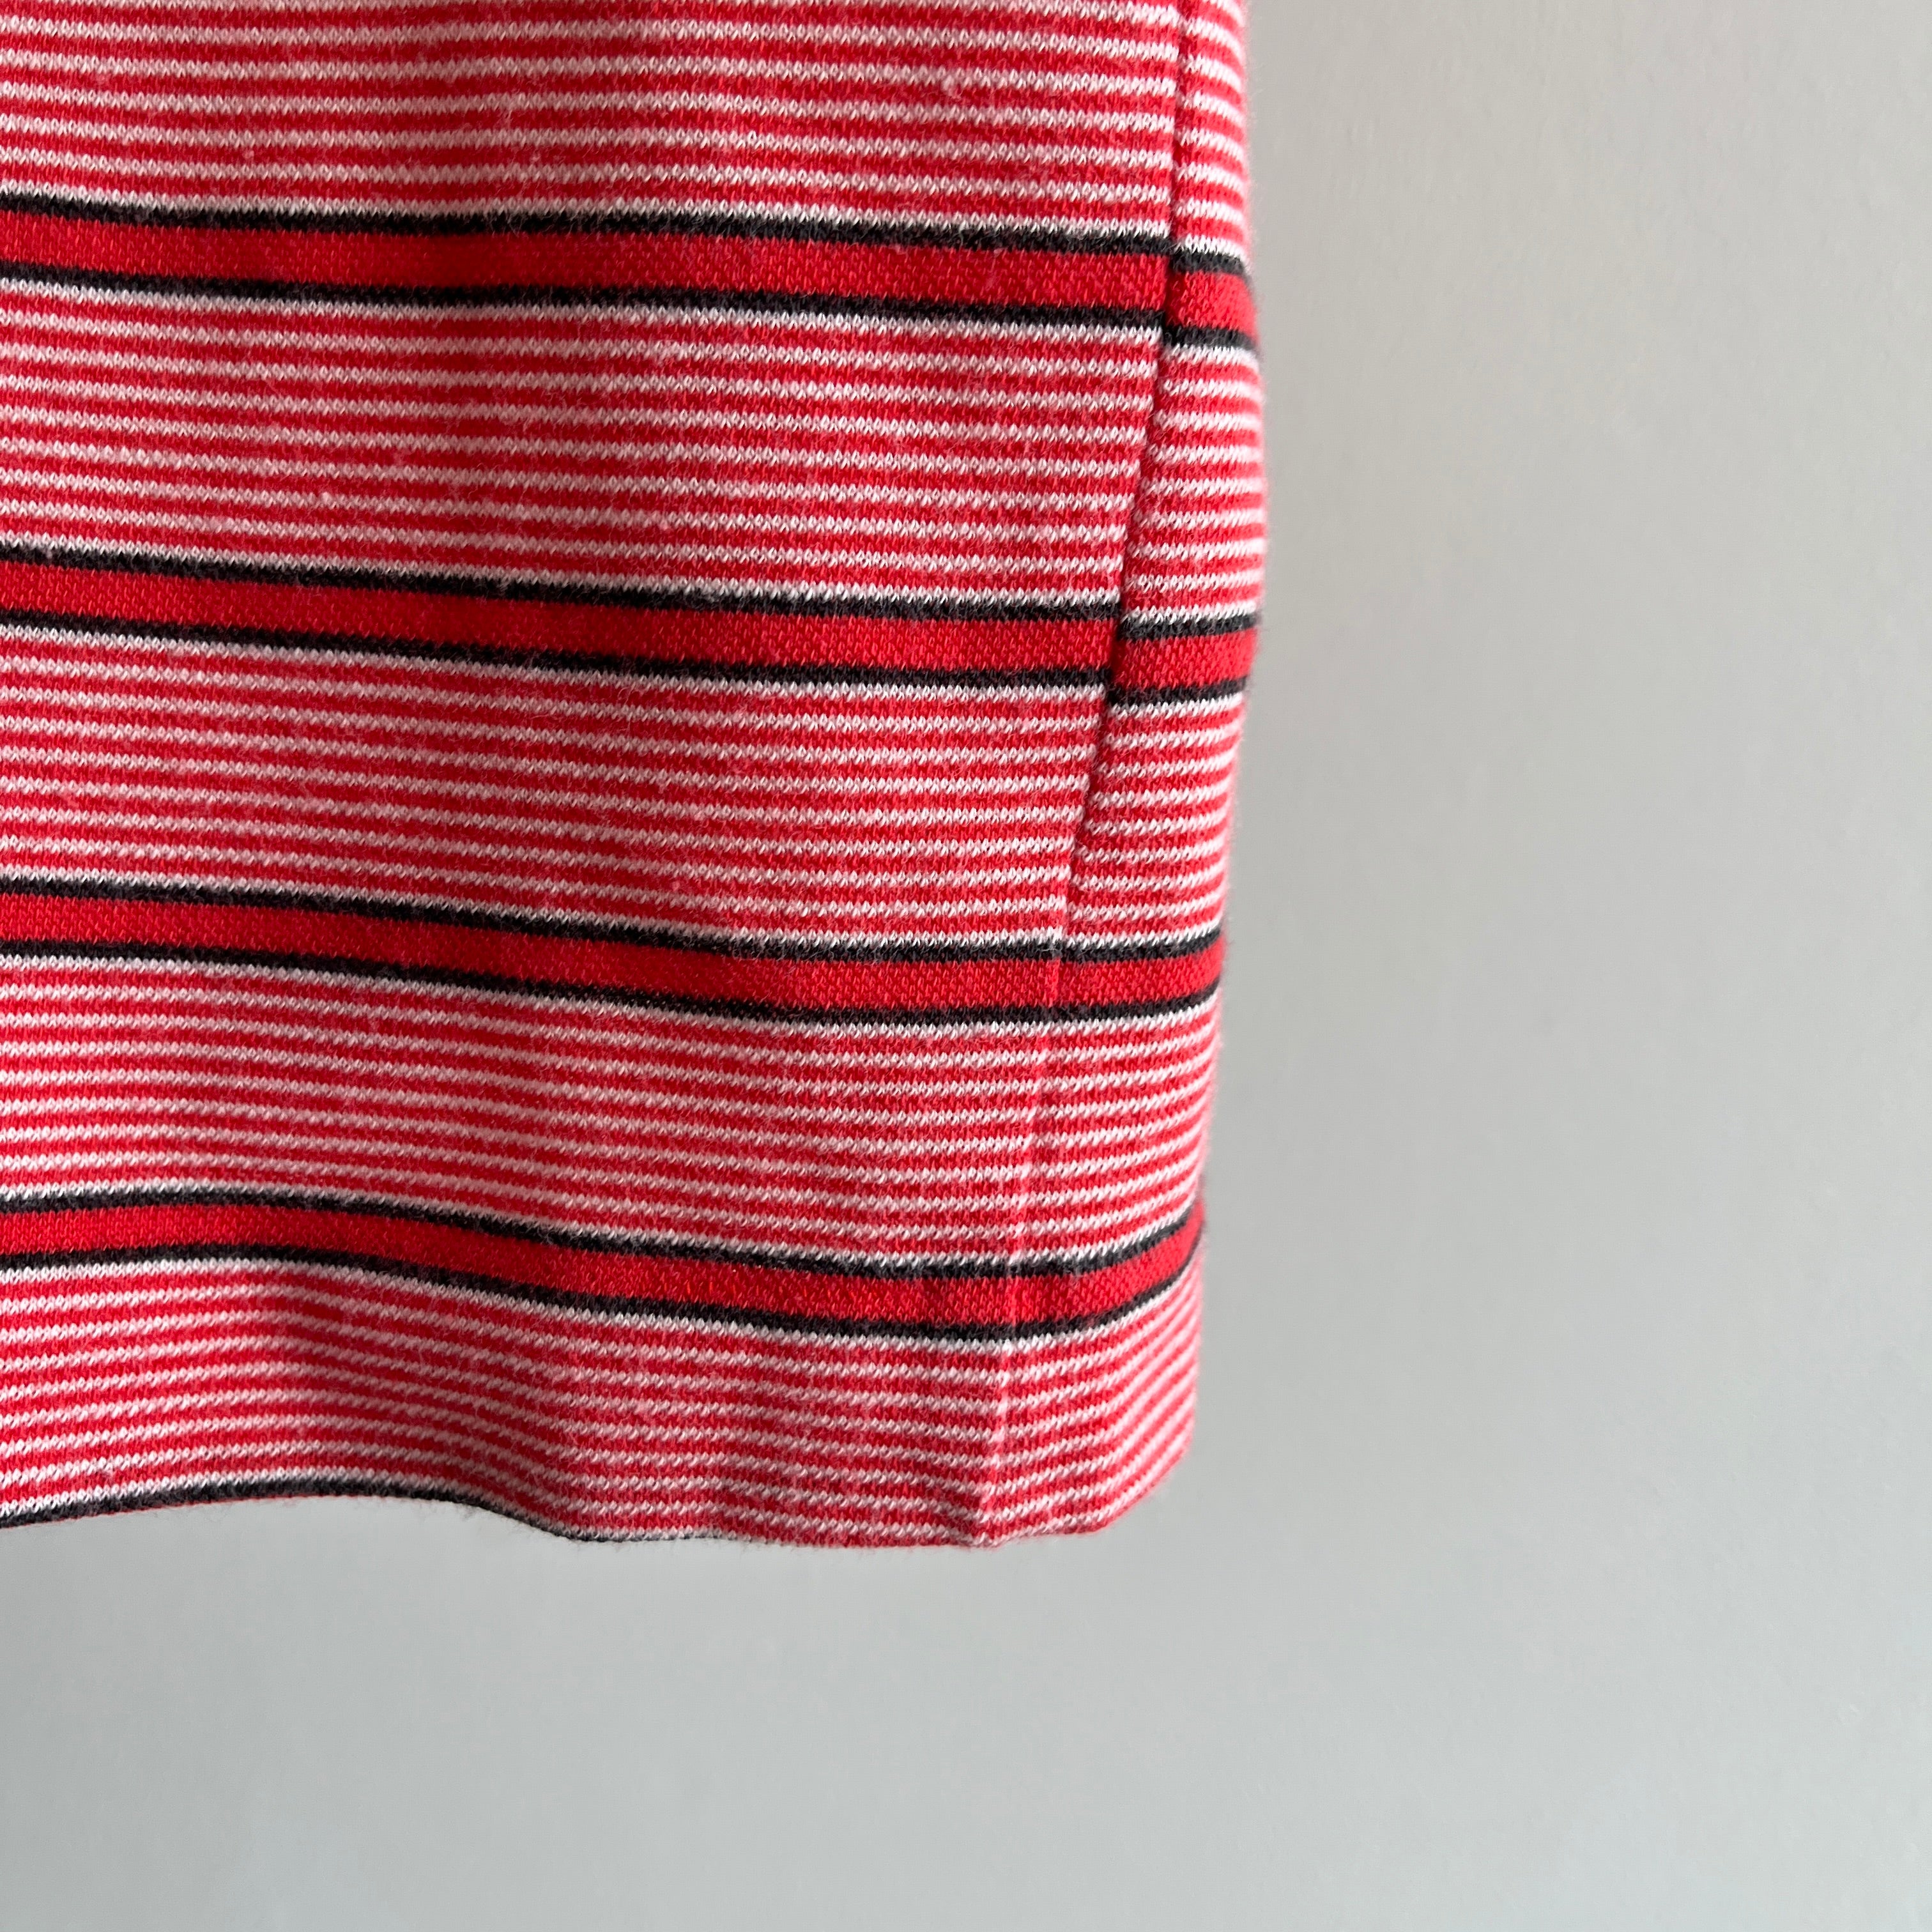 1970s Thin Striped Polo T-Shirt